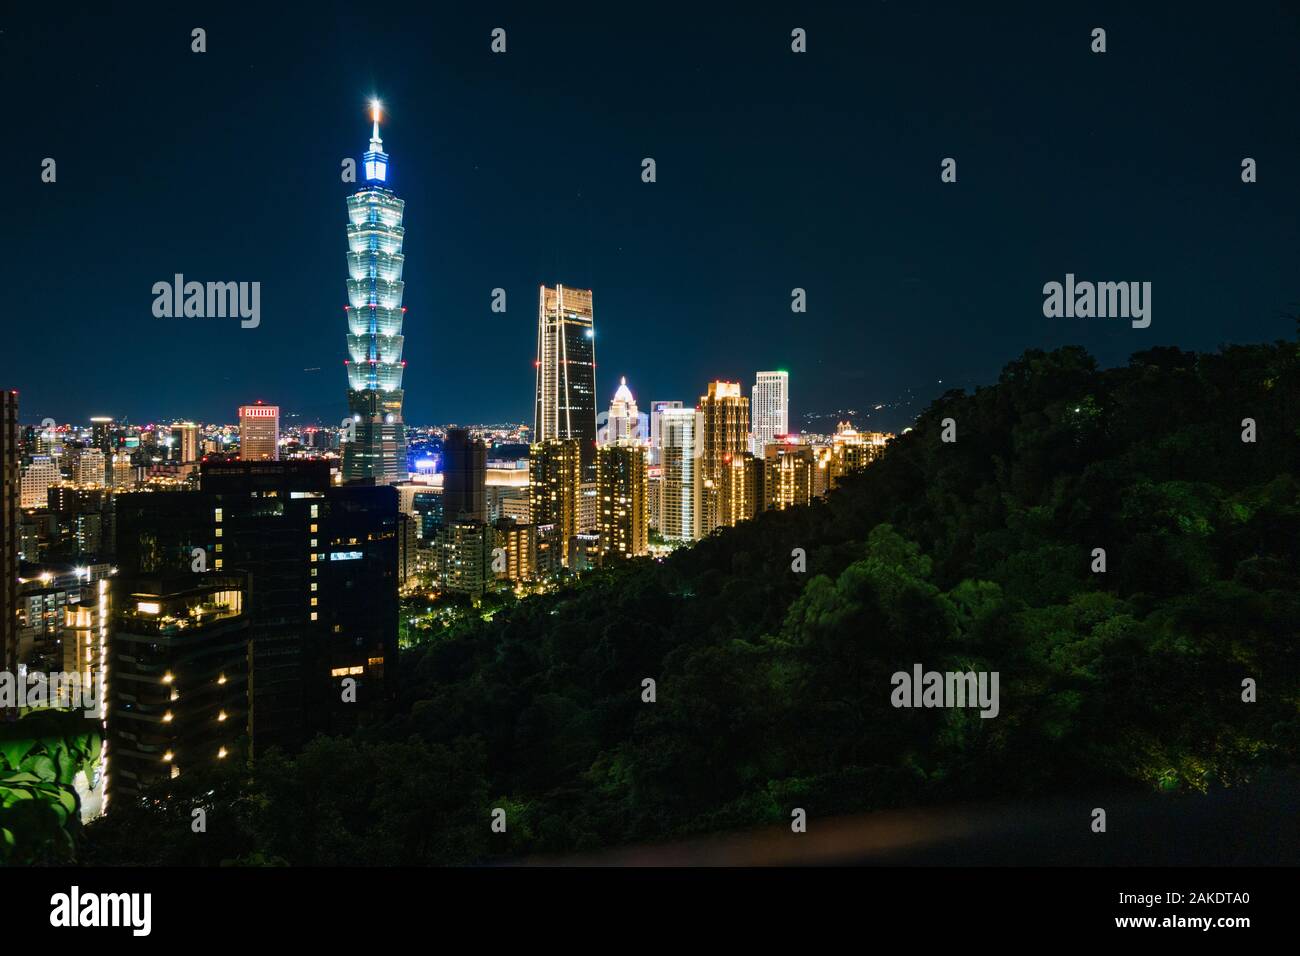 Le gratte-ciel Taipei 101 et les gratte-ciel de la ville illuminés la nuit, comme vu de Elephant Hill, Taipei, Taiwan Banque D'Images